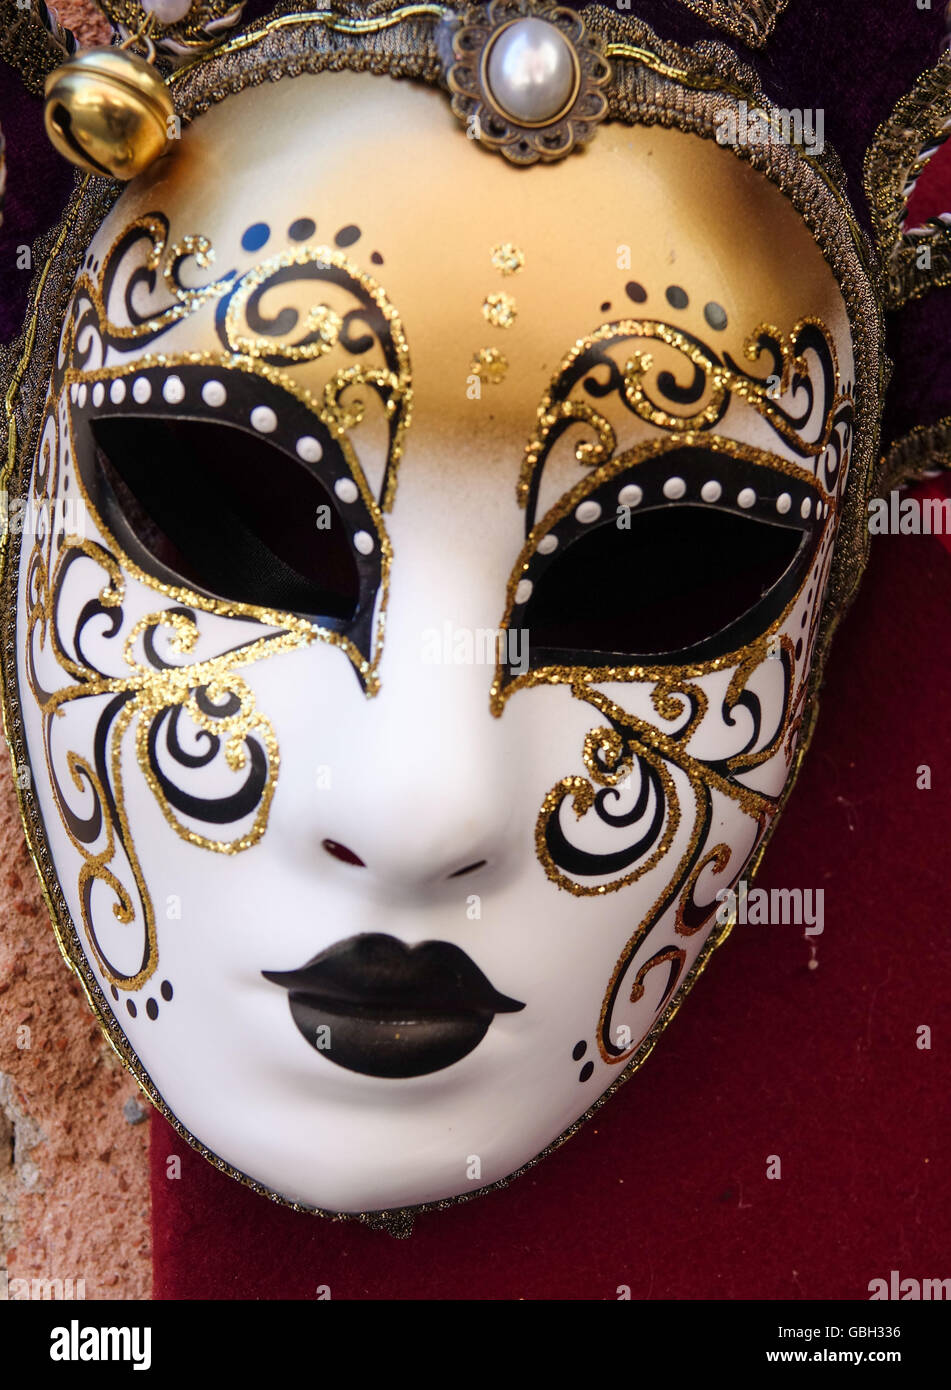 Berühmte venezianische Masken - Karneval in Venedig Karneval  Stockfotografie - Alamy